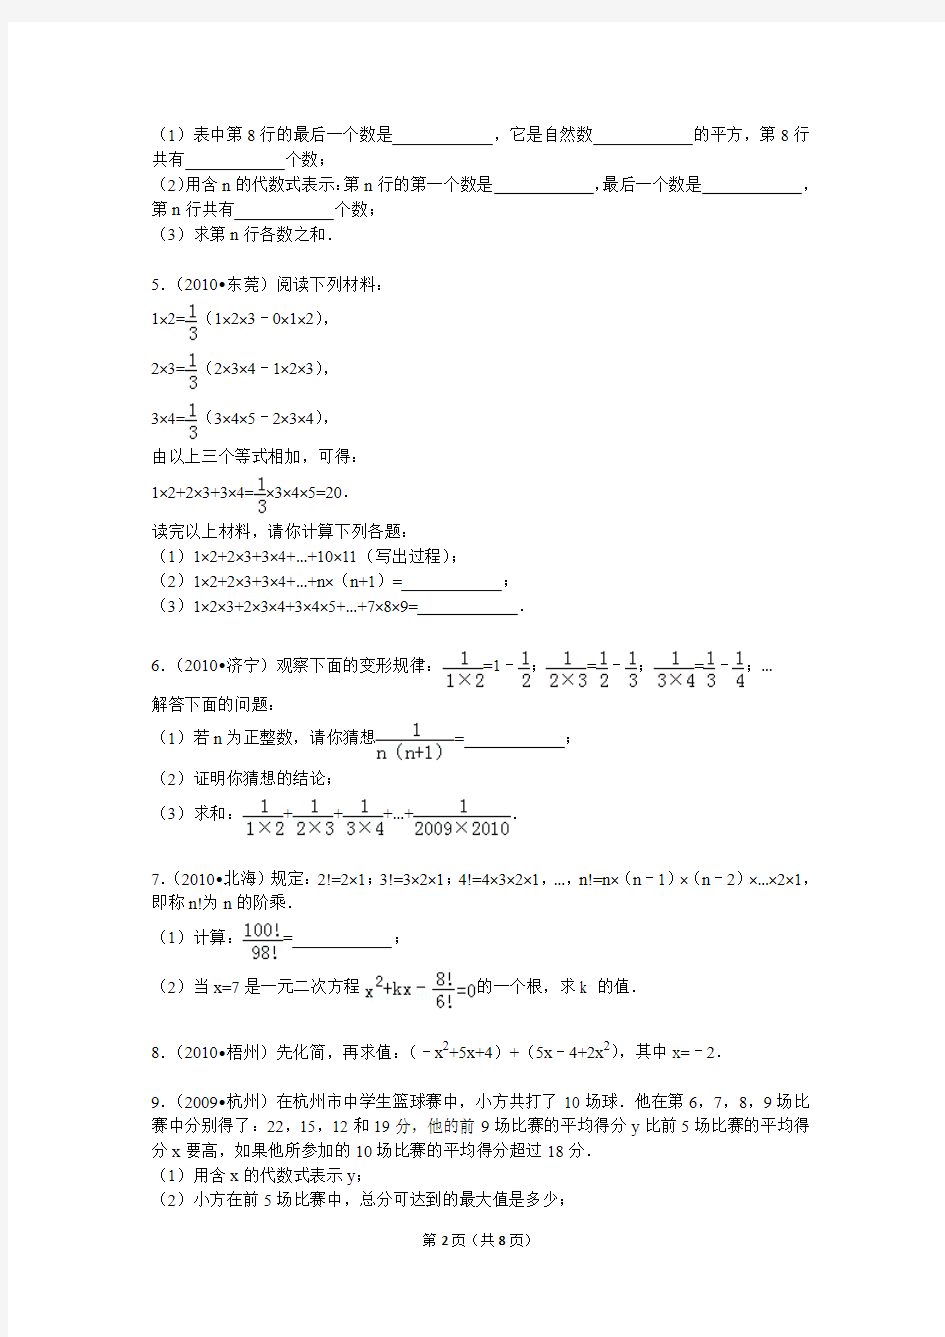 2015年11月08日yangn的初中数学组卷